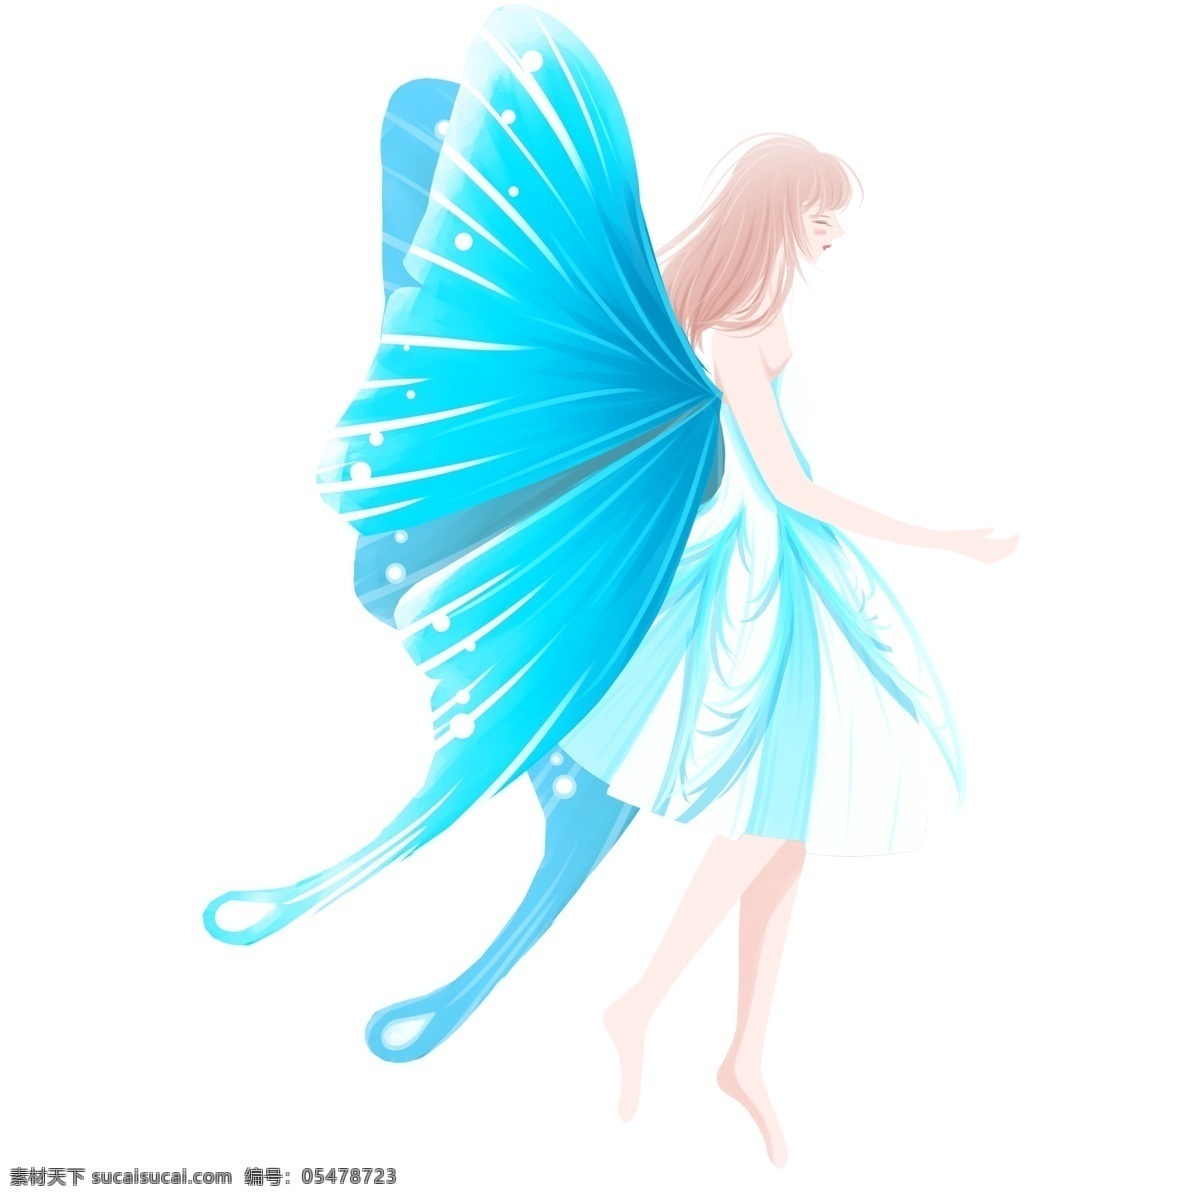 蓝色 唯美 清新 精灵 女生 卡通 手绘 女孩 翅膀 插画 少女